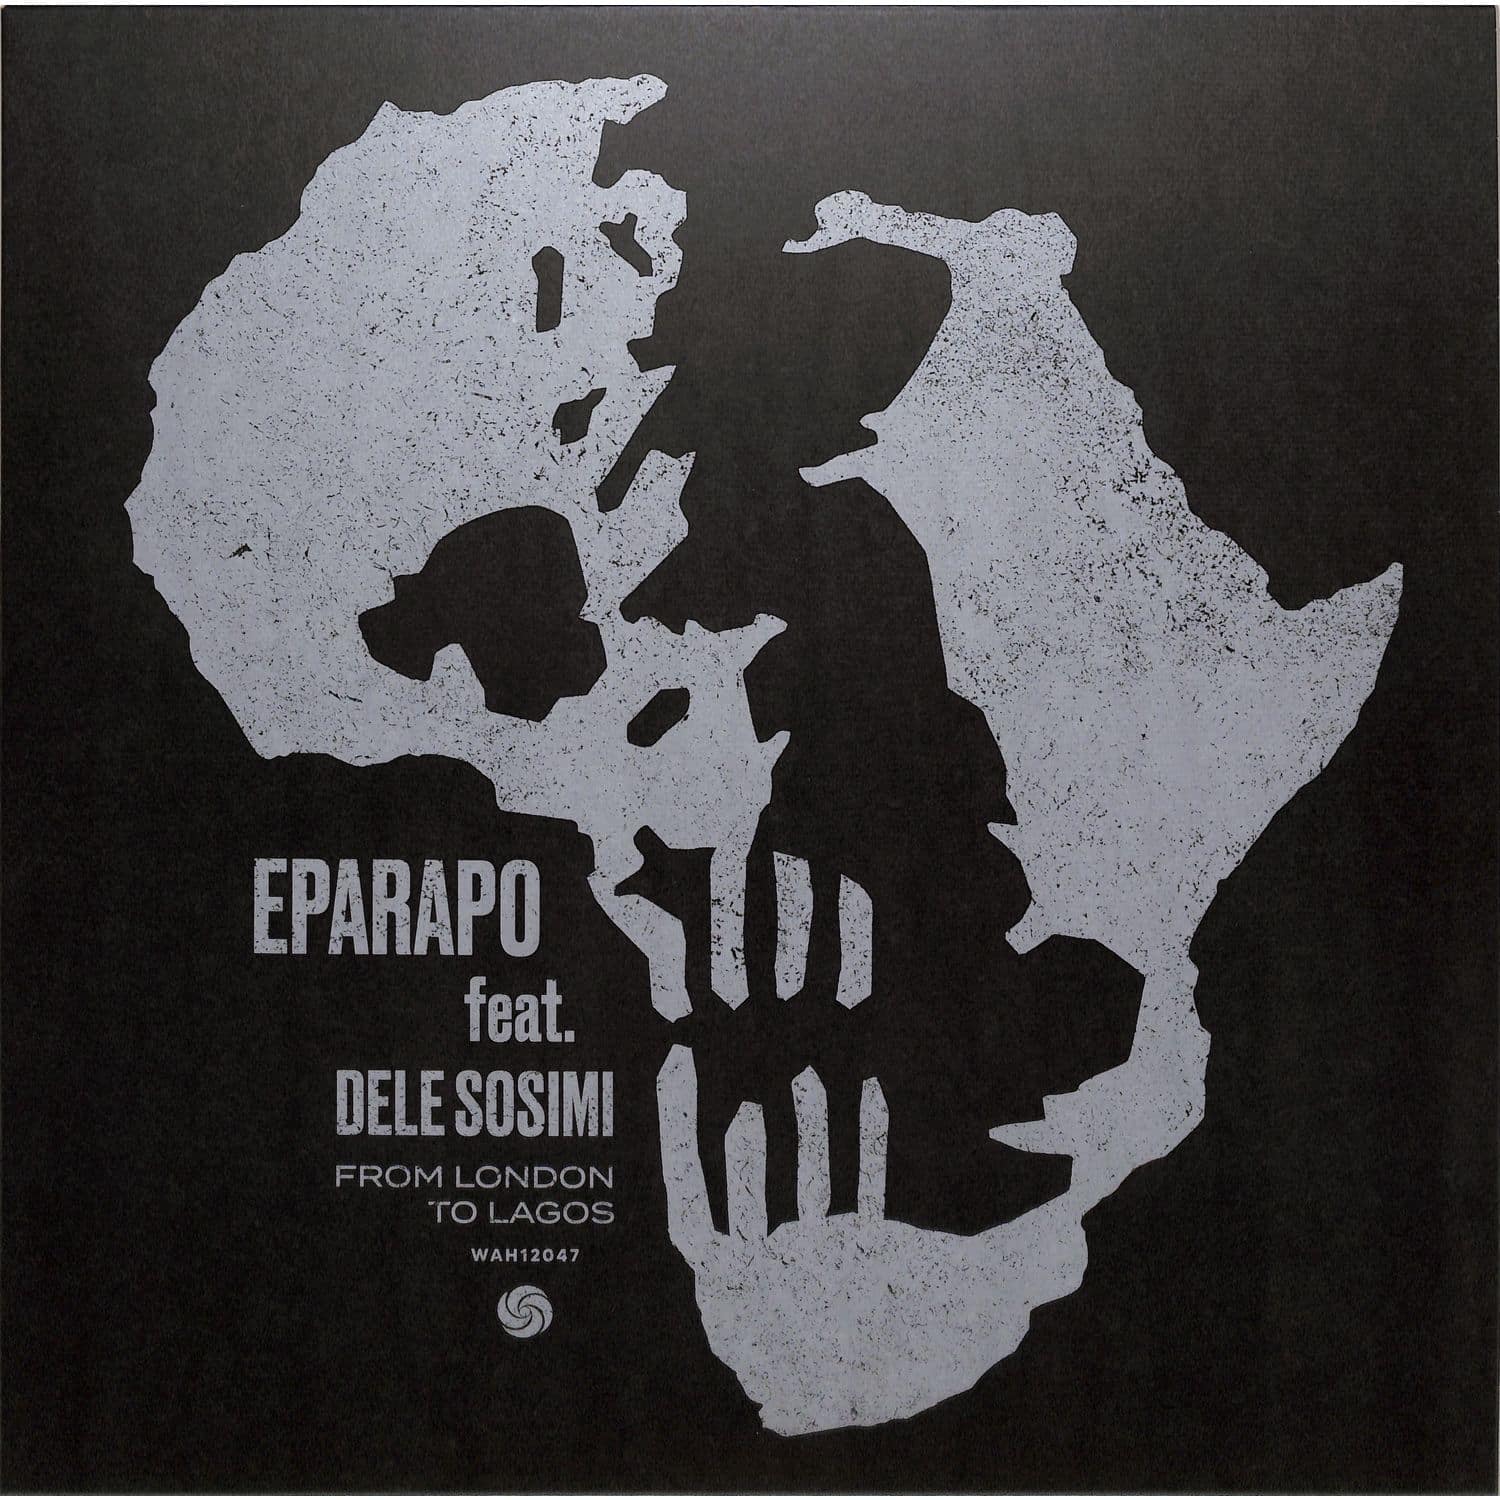 Eparapo Feat. Dele Sosimi - FROM LONDON TO LAGOS 